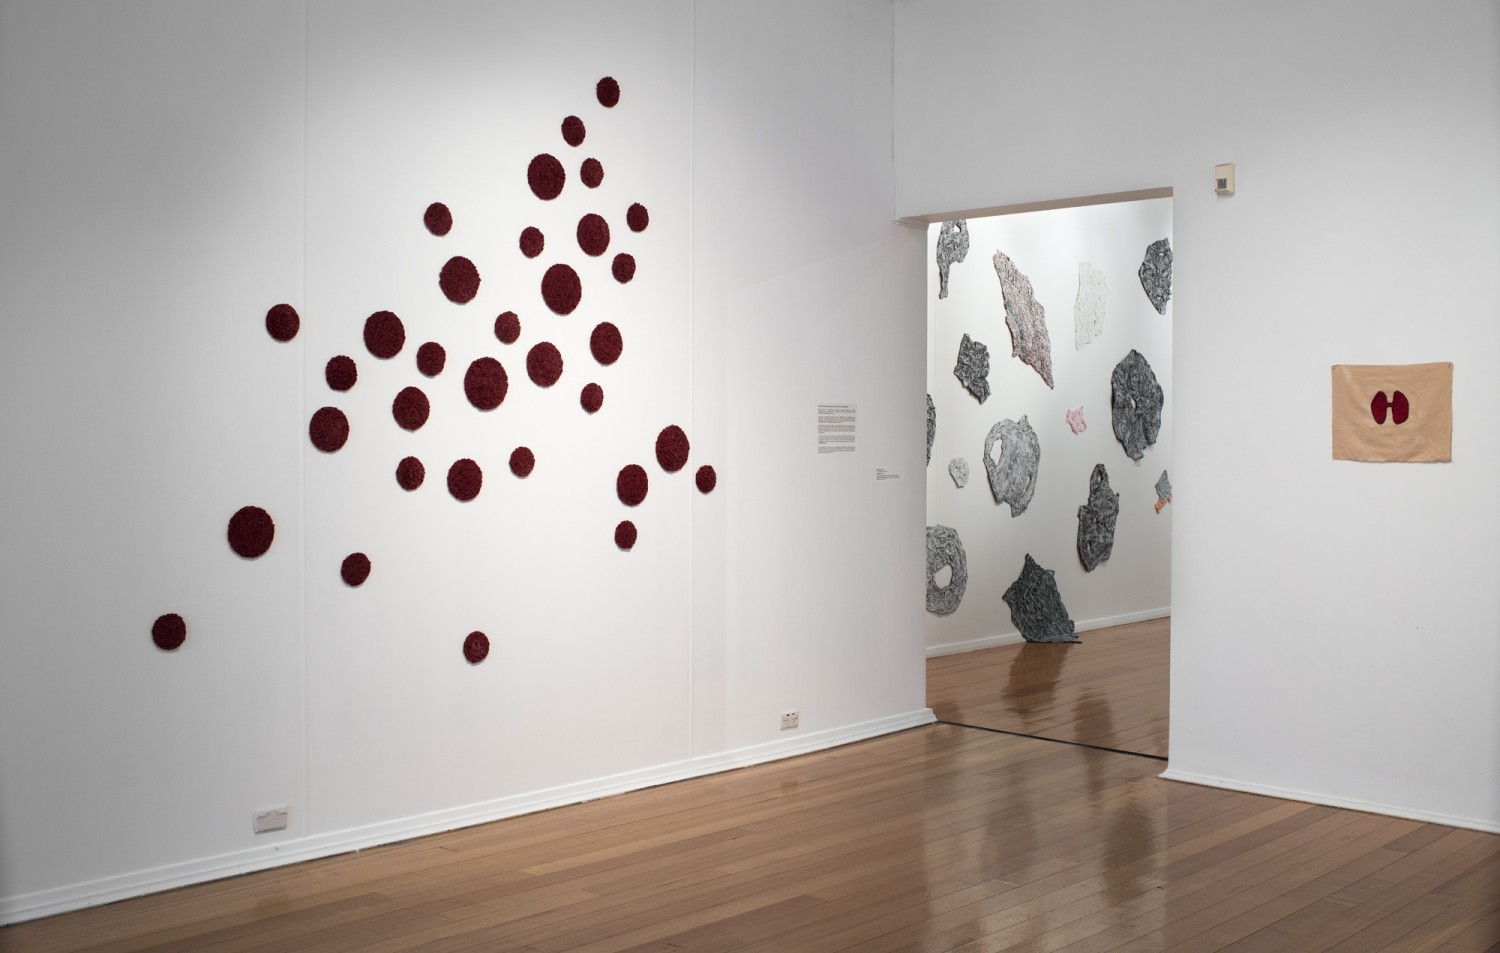 lumen, whitewash, blood is (vi) - installation view by Michele Elliot